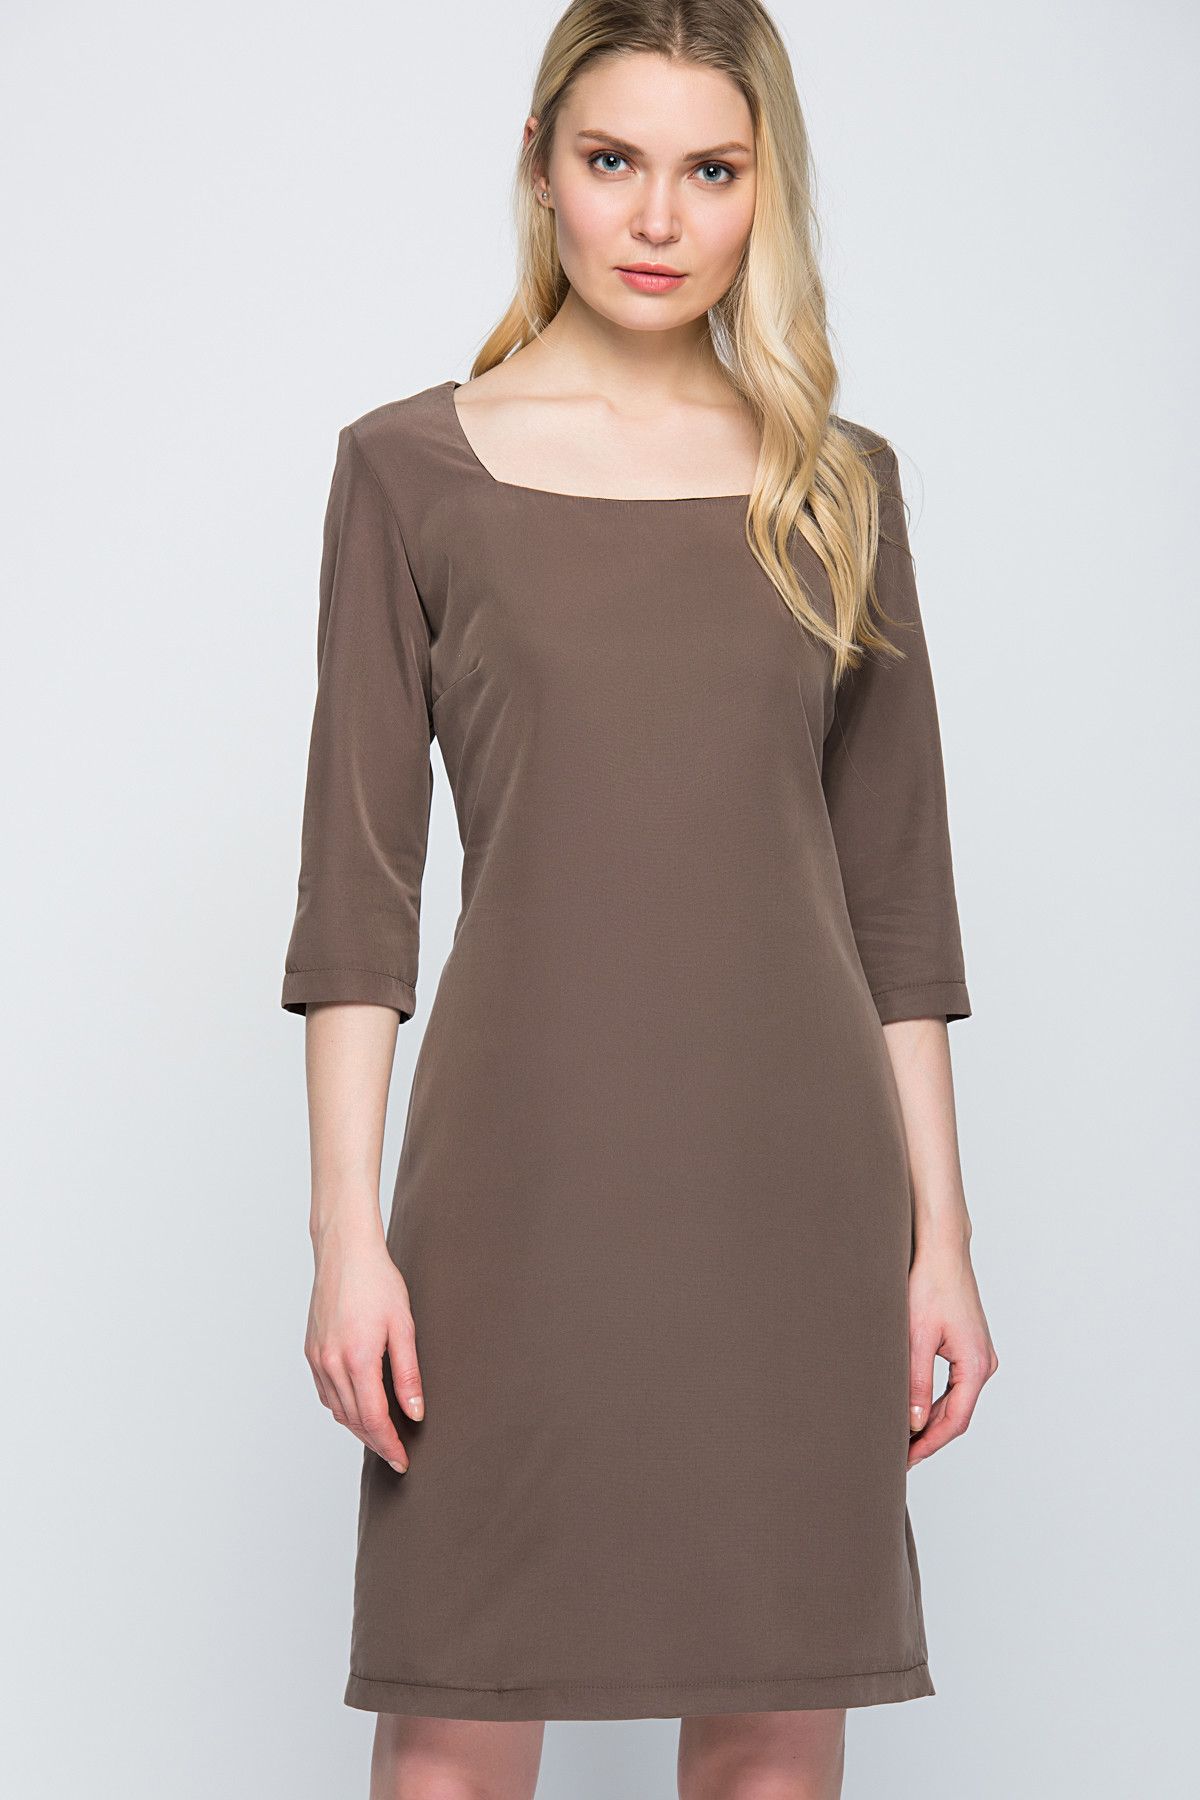 Laranor Kadın Haki Nubuk Görünümlü Kare Yaka Elbise 15L4165